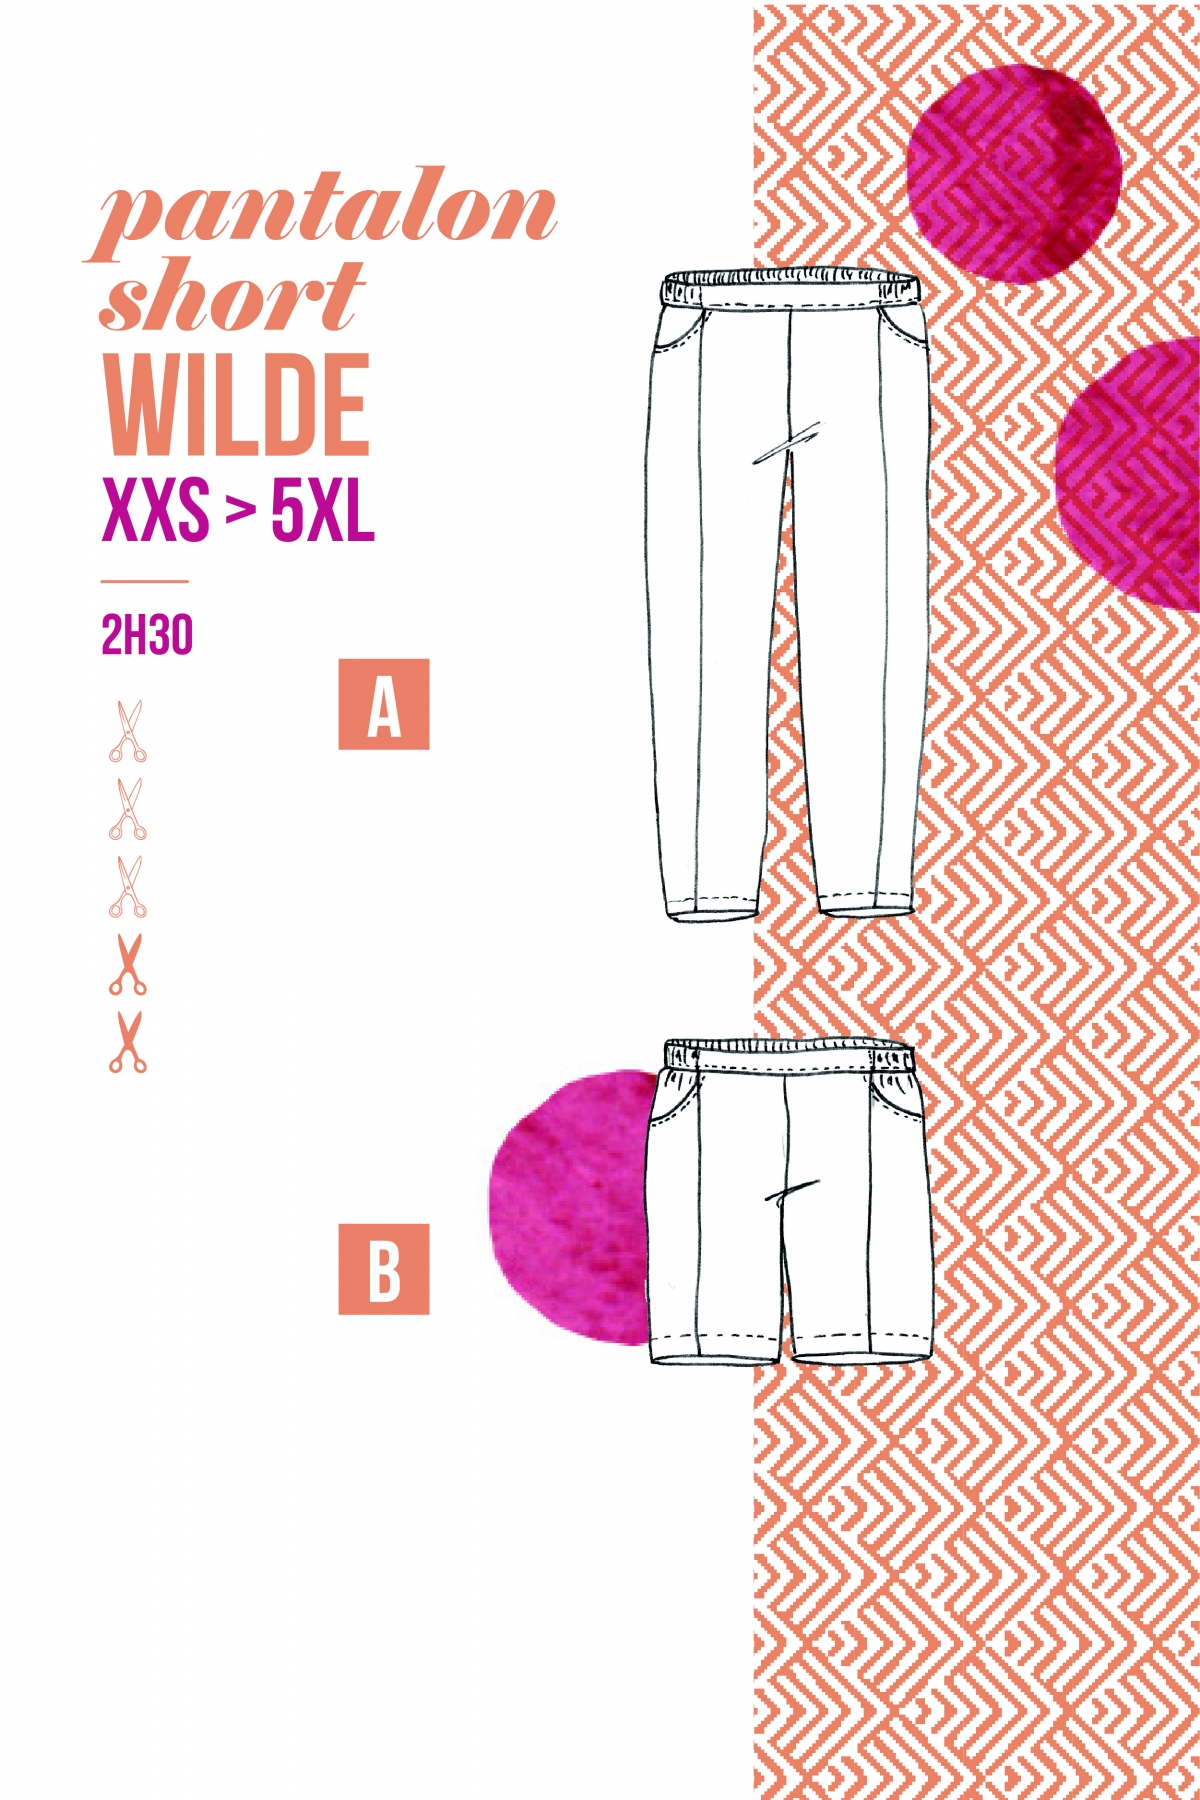 WILDE XXS >5XL